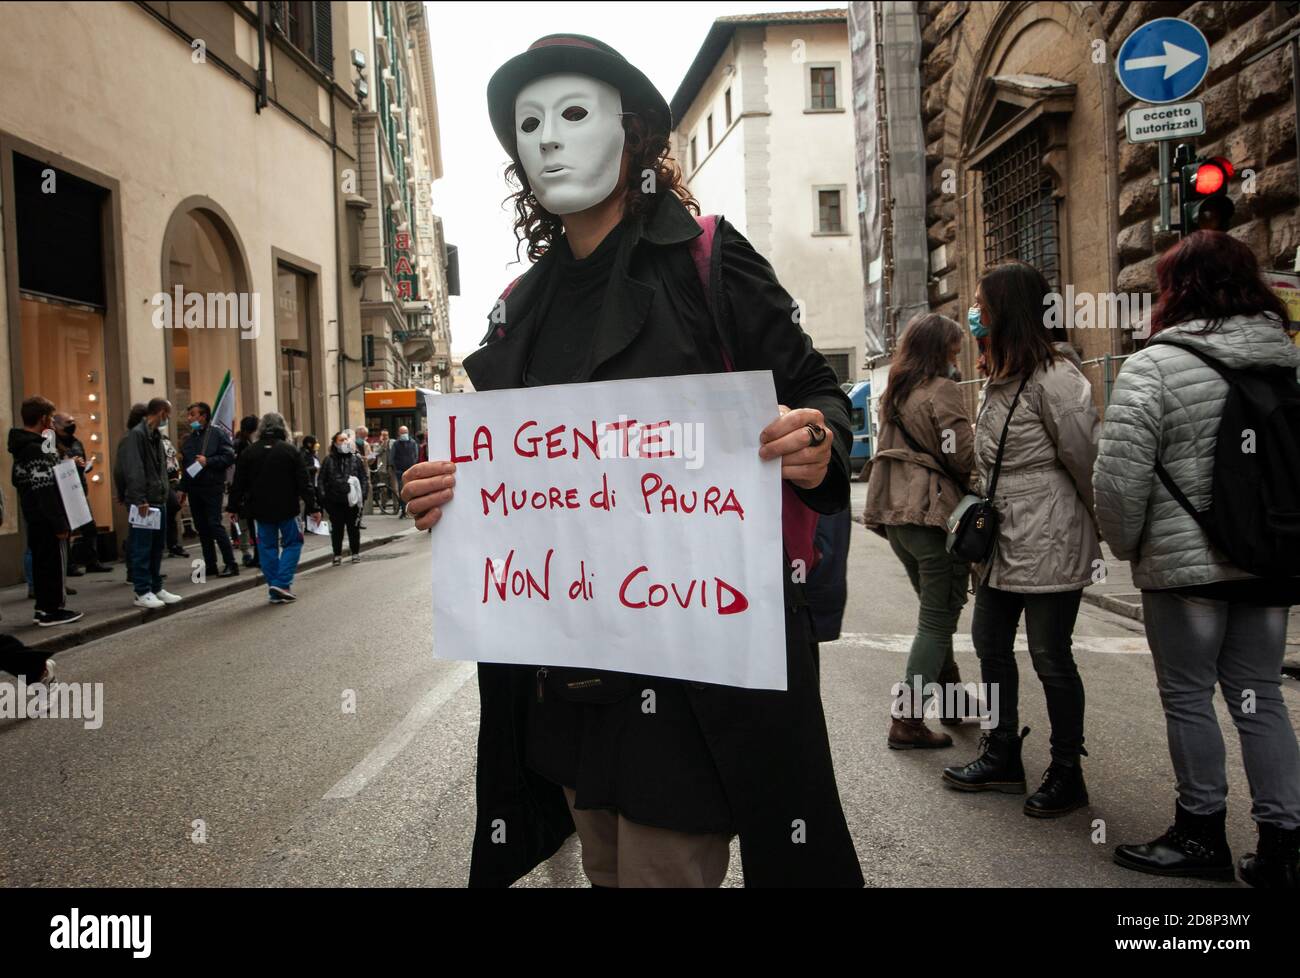 Firenze, Italia - 2020 ottobre 31: Persone con cartelli e manifesti in pubblico dimostrazione. Protestare per la restrizione delle libertà durante il Covid-19 Foto Stock